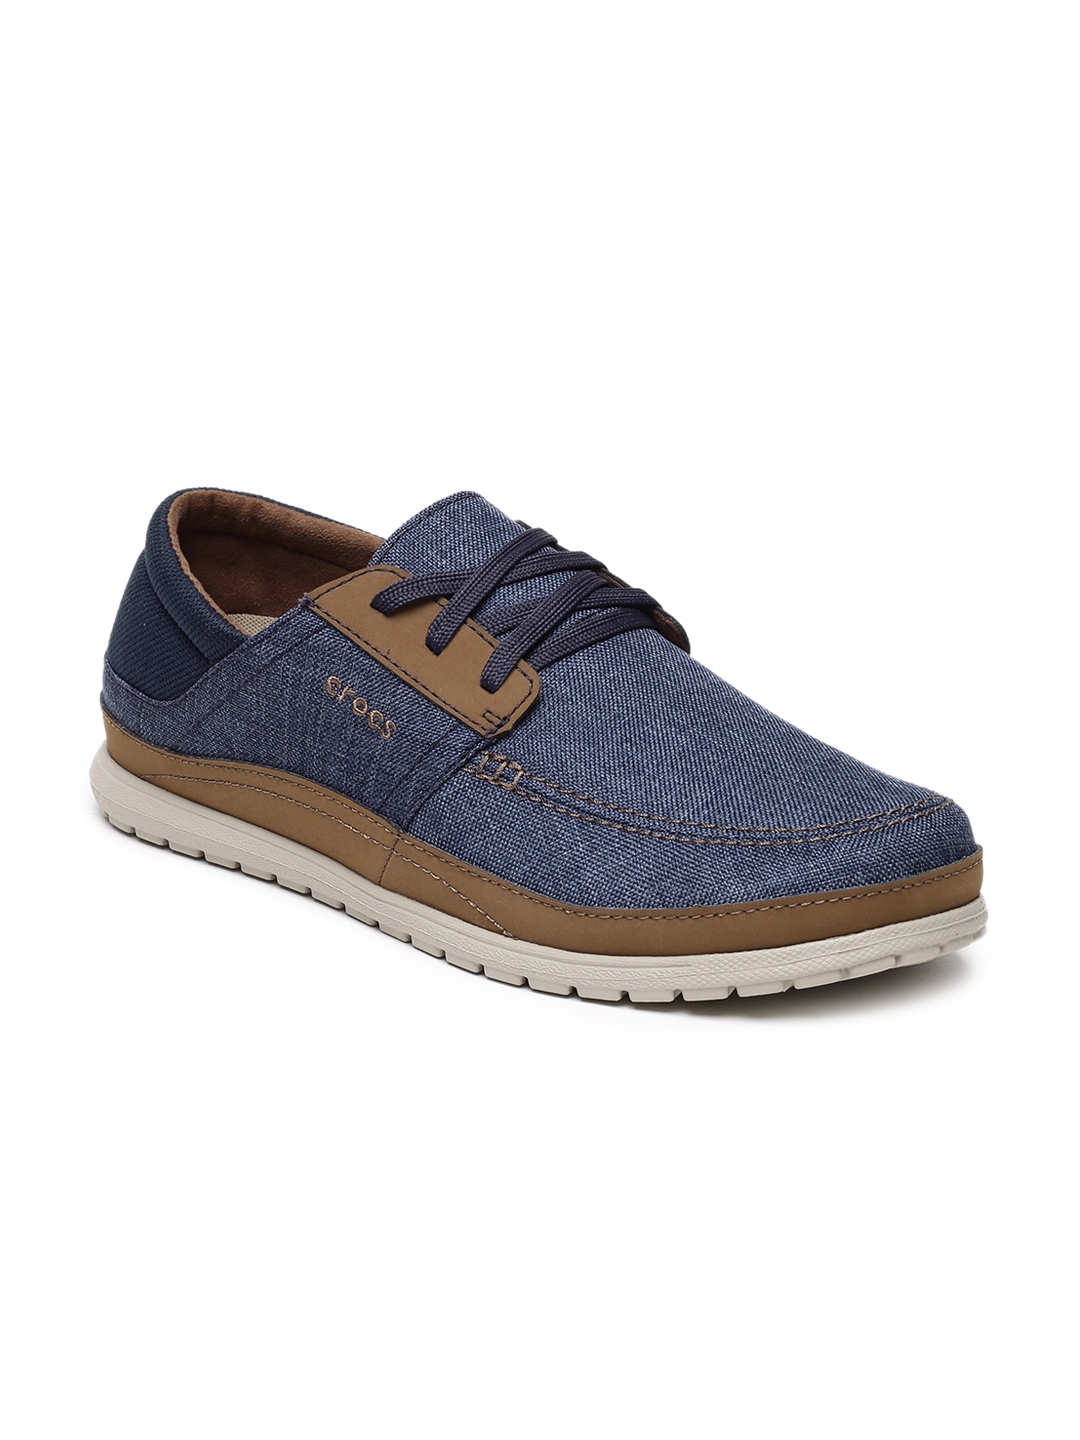 Buy Crocs  Men Navy Sneakers  Casual Shoes for Men 6516457 